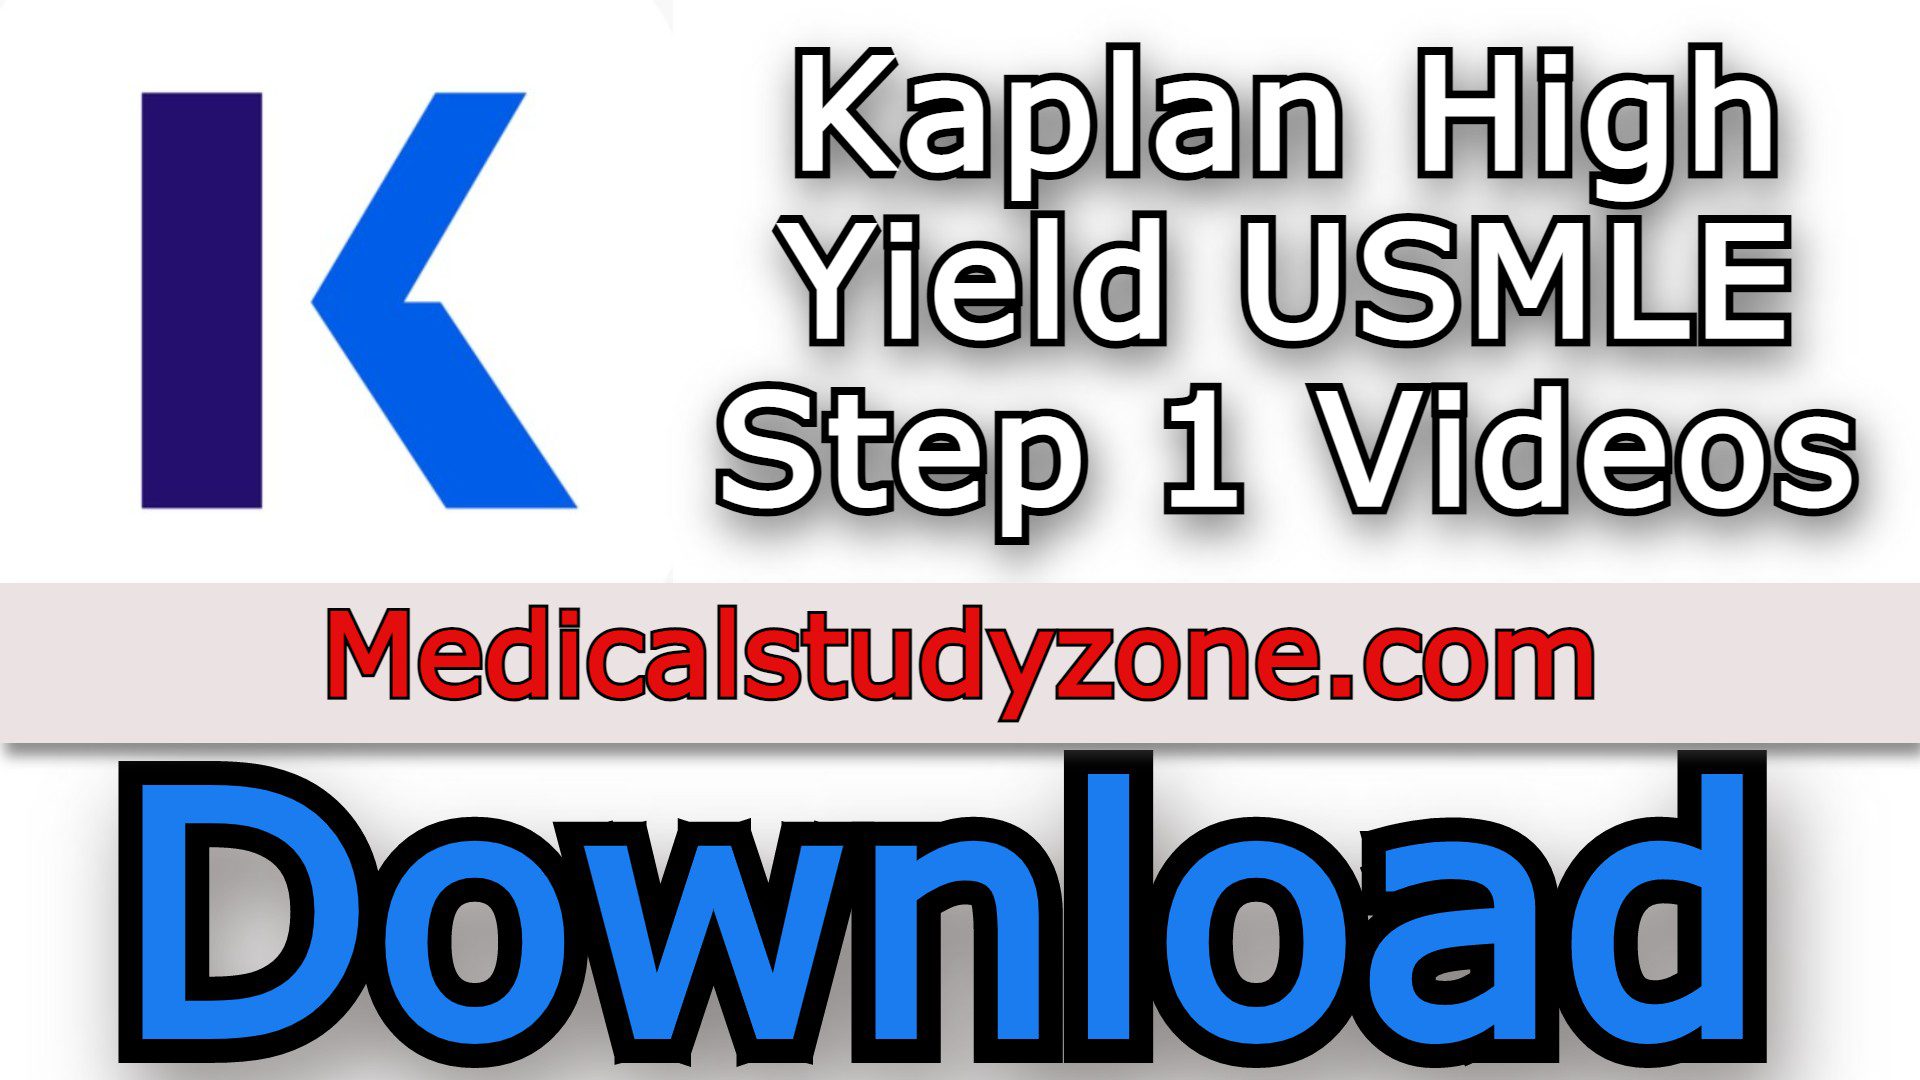 Kaplan High Yield USMLE Step 1 Videos 2021 Free Download